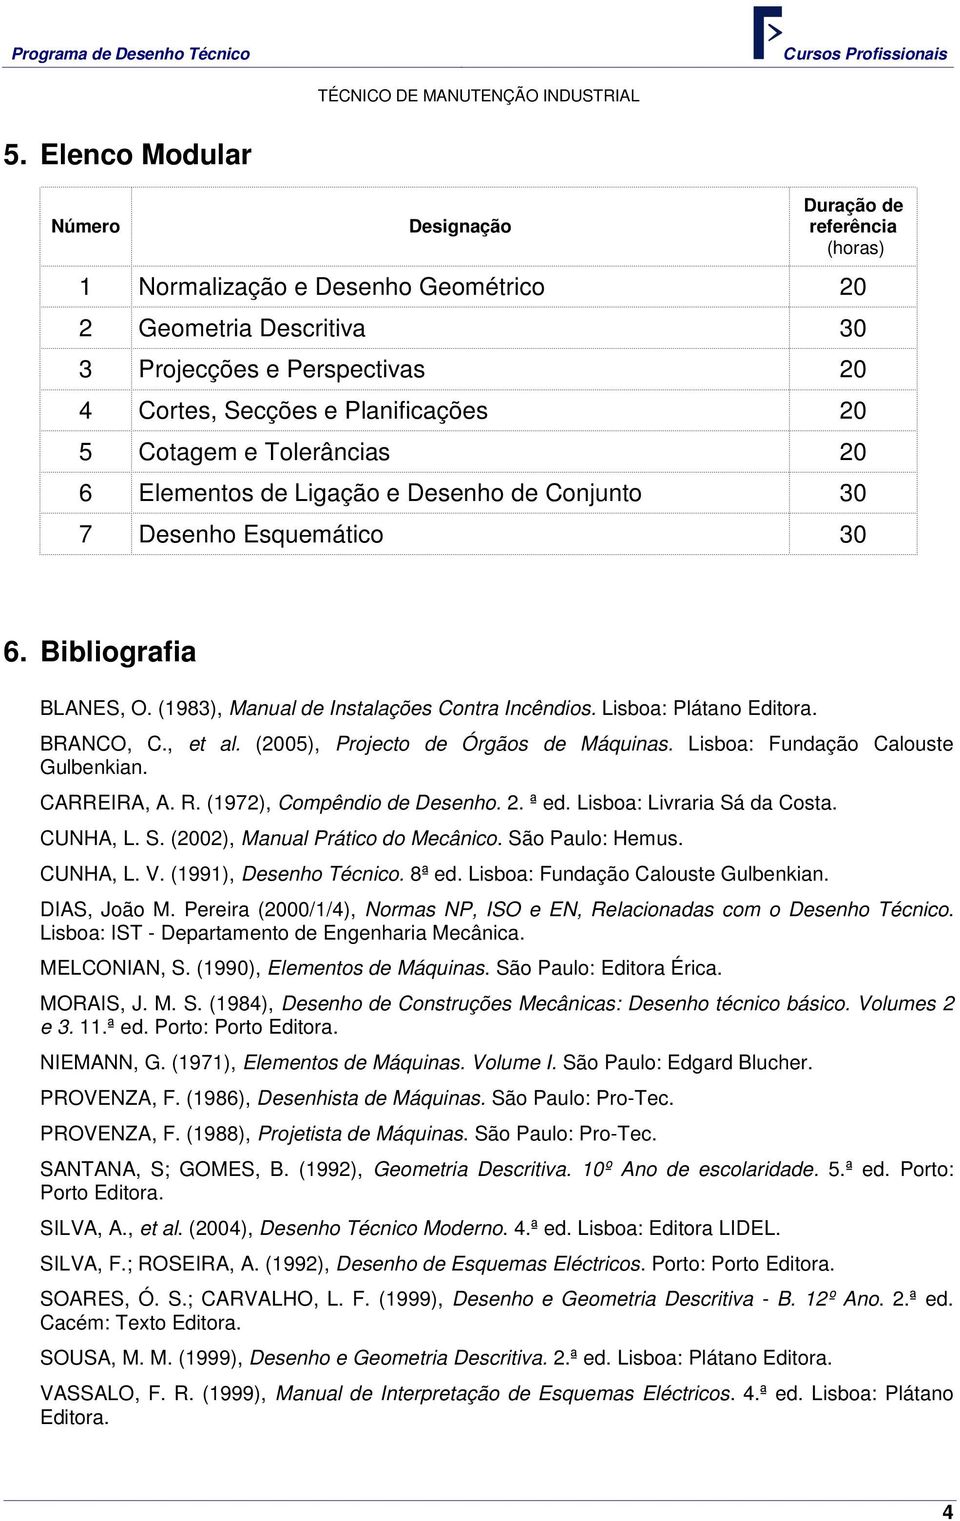 BRANCO, C., et al. (2005), Projecto de Órgãos de Máquinas. Lisboa: Fundação Calouste Gulbenkian. CARREIRA, A. R. (1972), Compêndio de Desenho. 2. ª ed. Lisboa: Livraria Sá